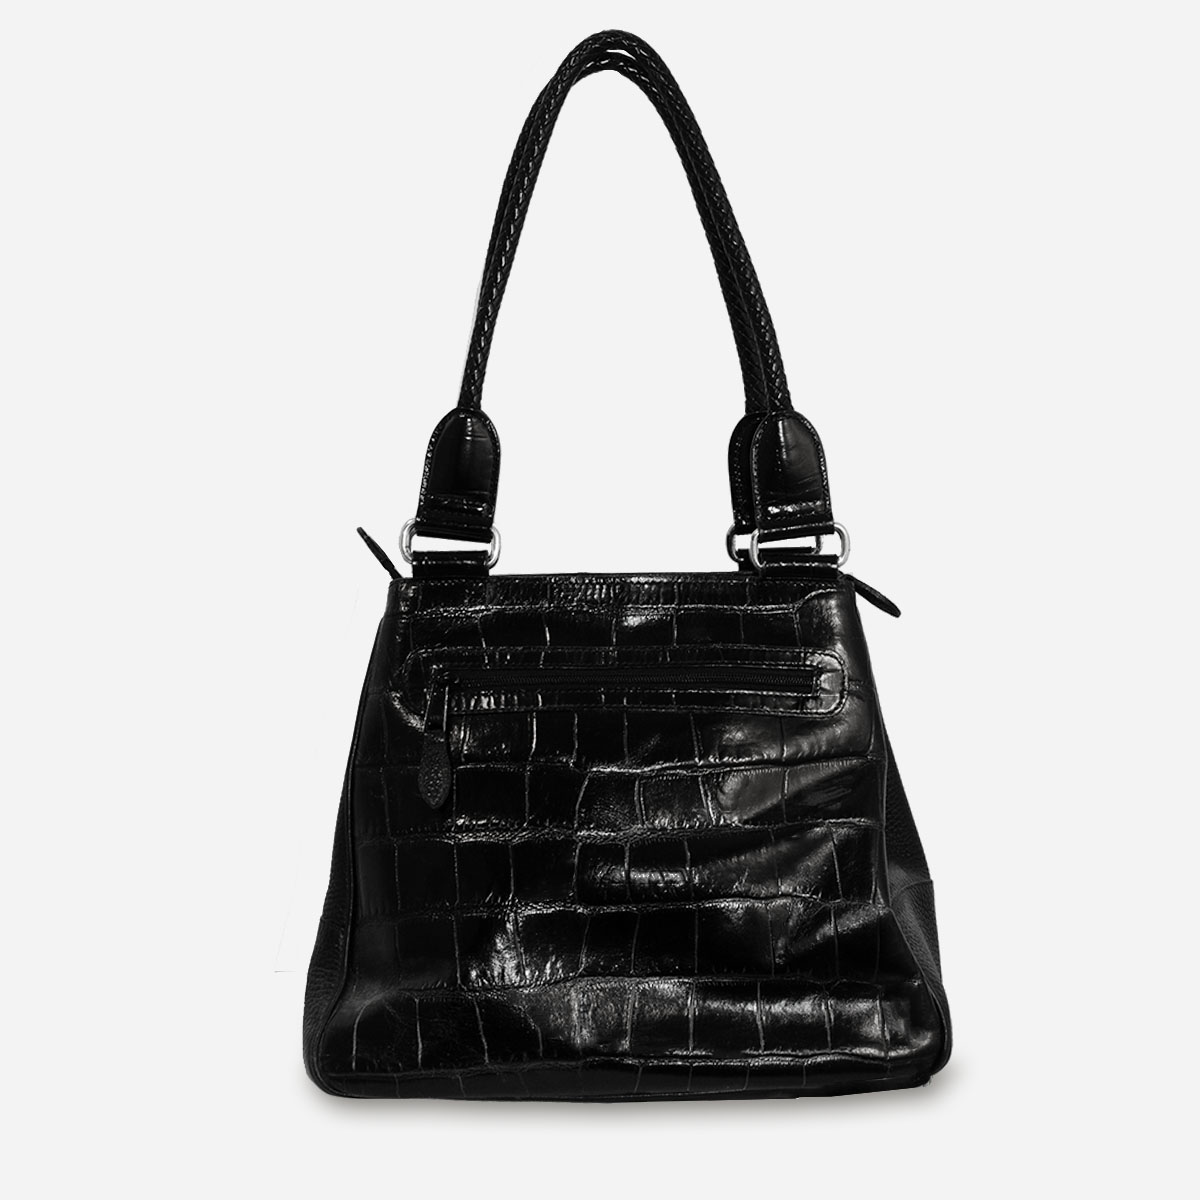 vintage black leather handbag